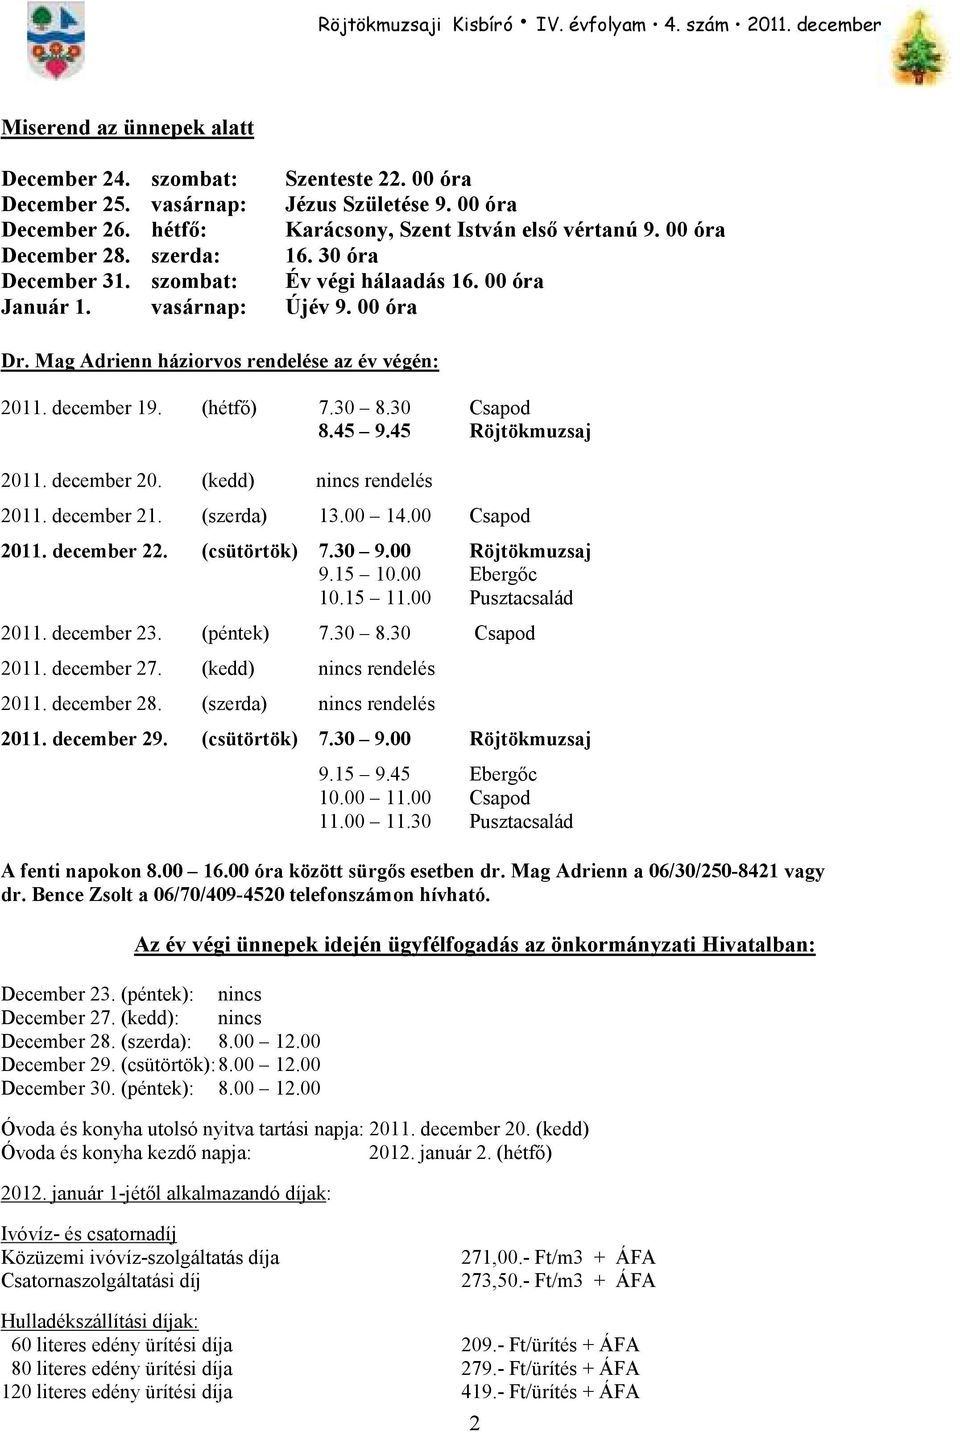 45 9.45 Röjtökmuzsaj 2011. december 20. (kedd) nincs rendelés 2011. december 21. (szerda) 13.00 14.00 Csapod 2011. december 22. (csütörtök) 7.30 9.00 Röjtökmuzsaj 9.15 10.00 Ebergıc 10.15 11.